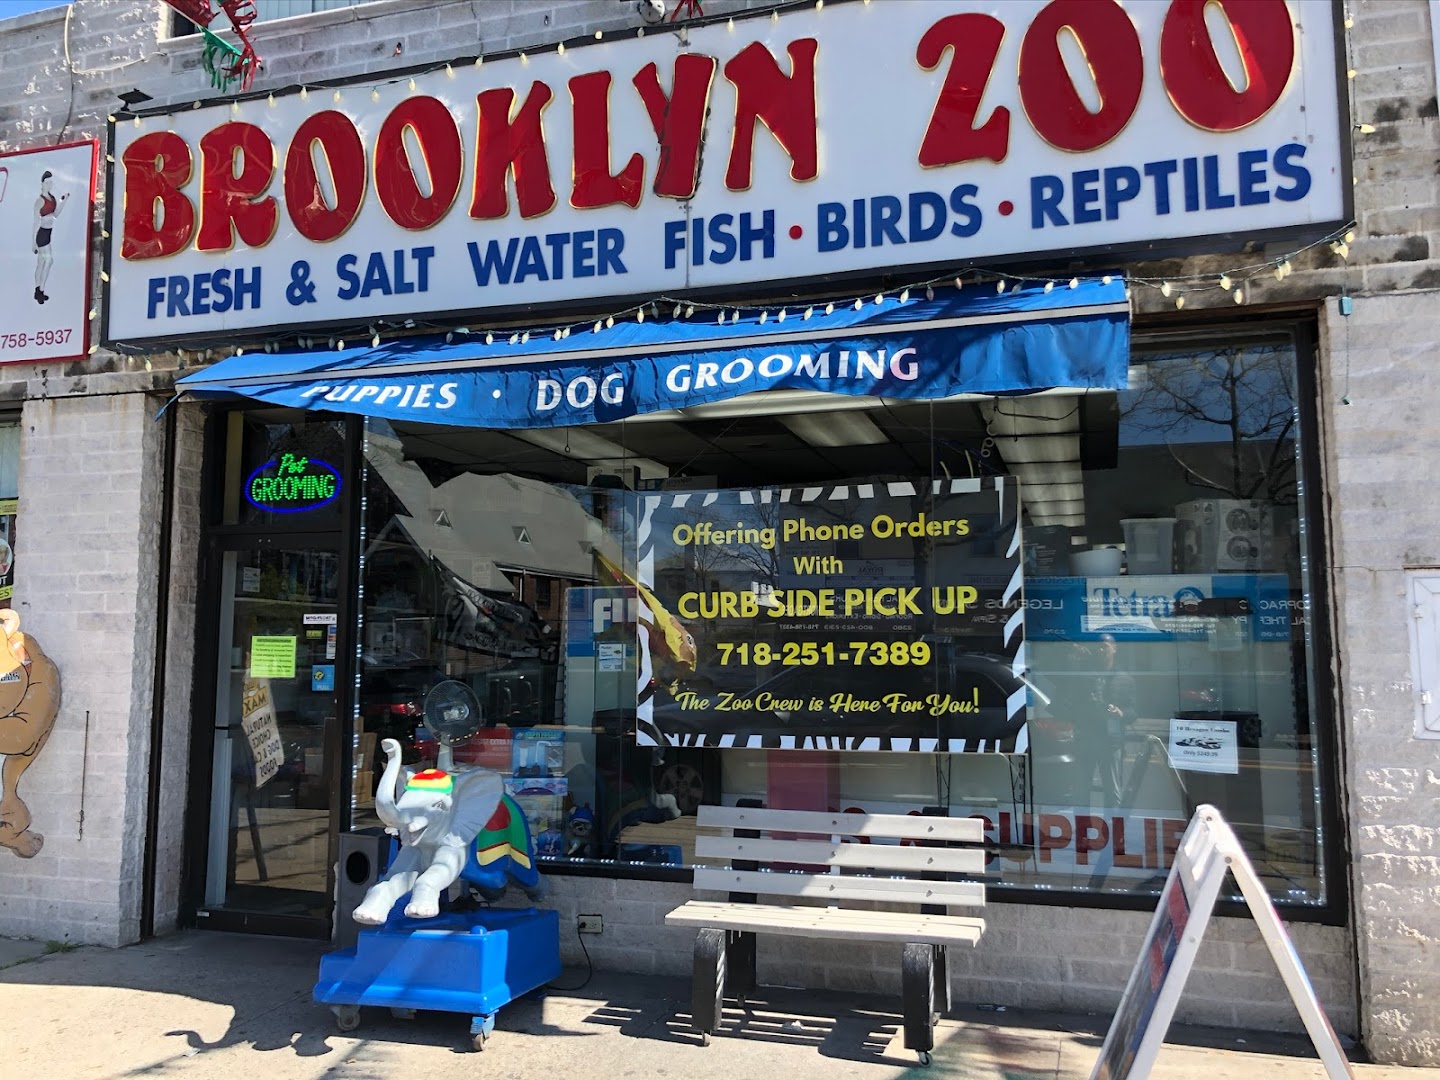 Brooklyn Zoo & Aquarium Pet Store